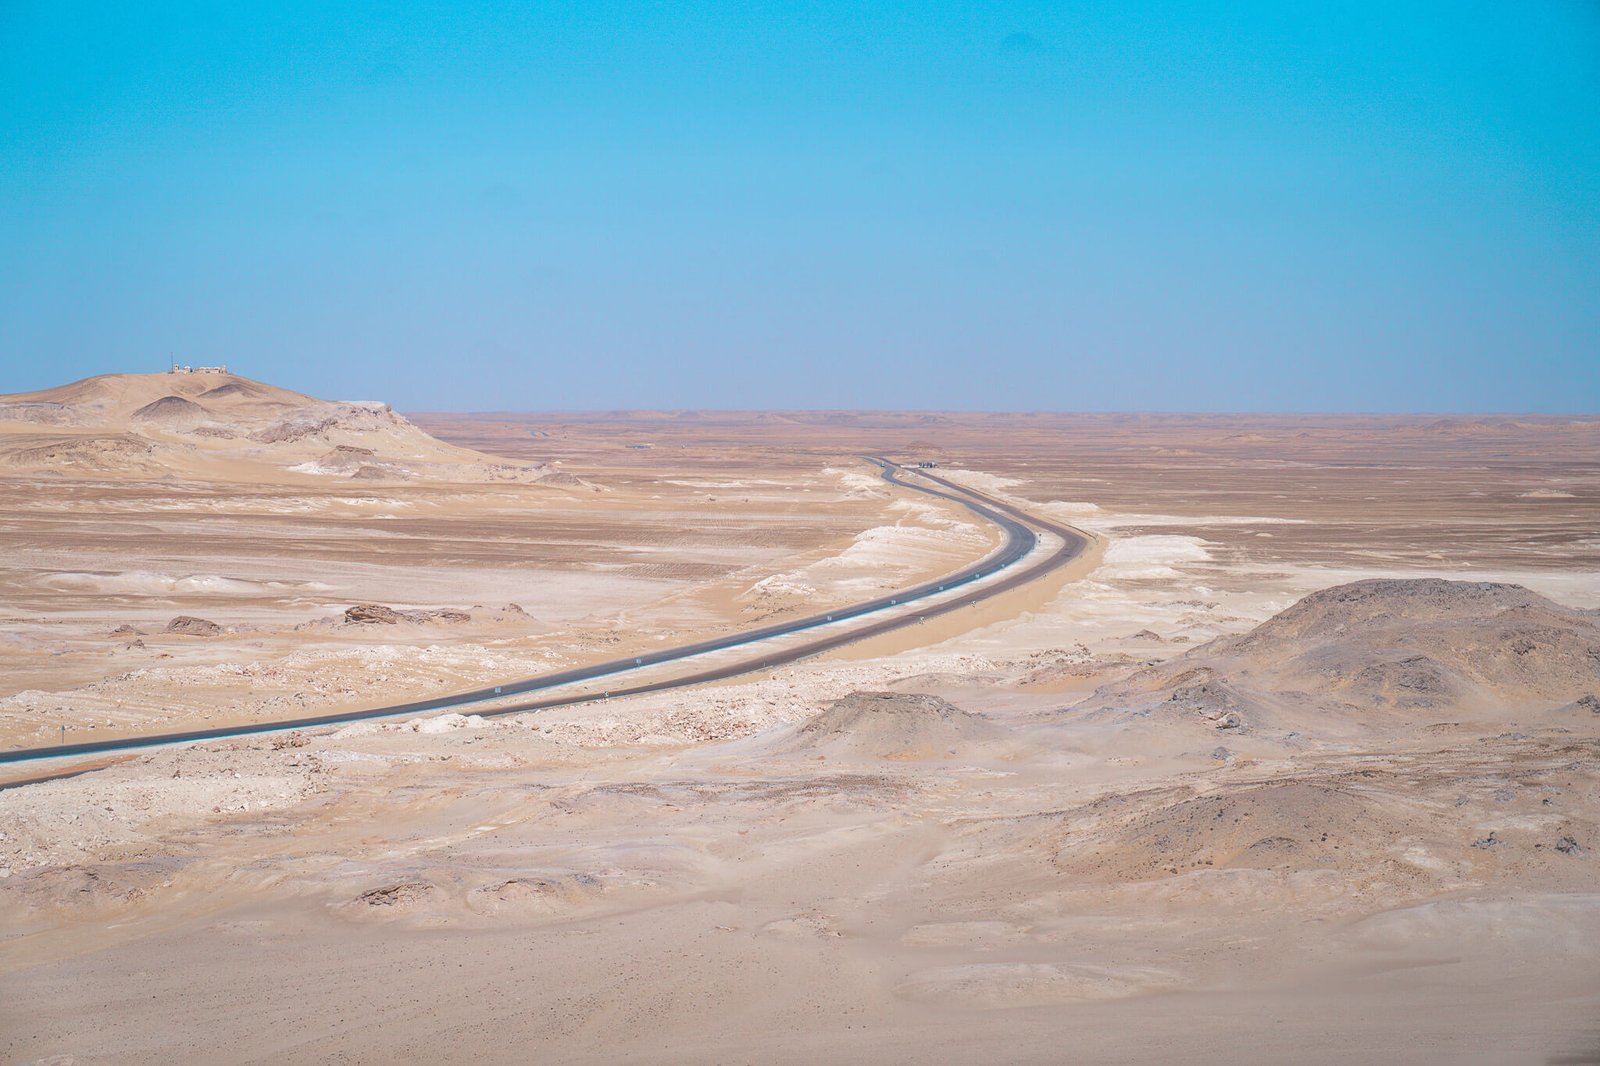 driving through the white desert in Egypt